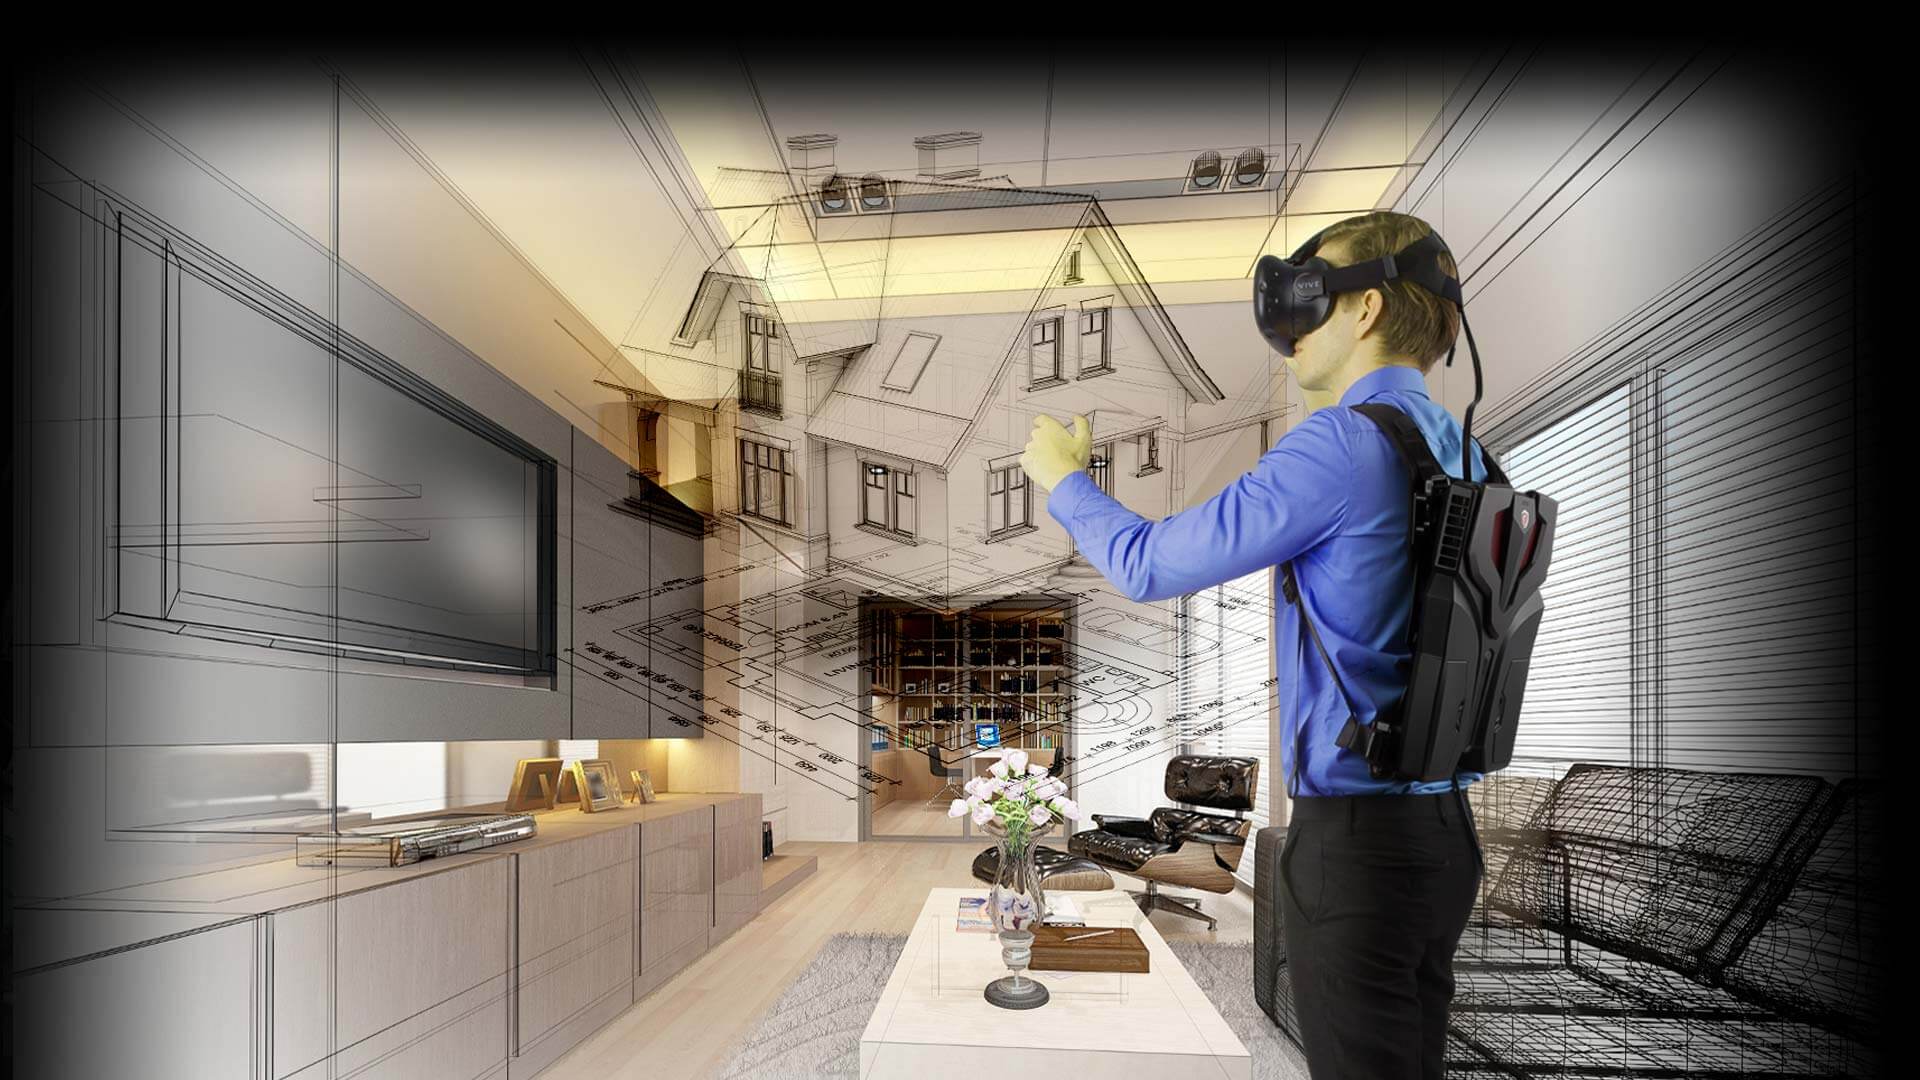 Vr cr. Виртуальная реальность в архитектуре. Архитектор виртуальной реальности. VR технологии в интерьере. Архитектор виртуальных миров.